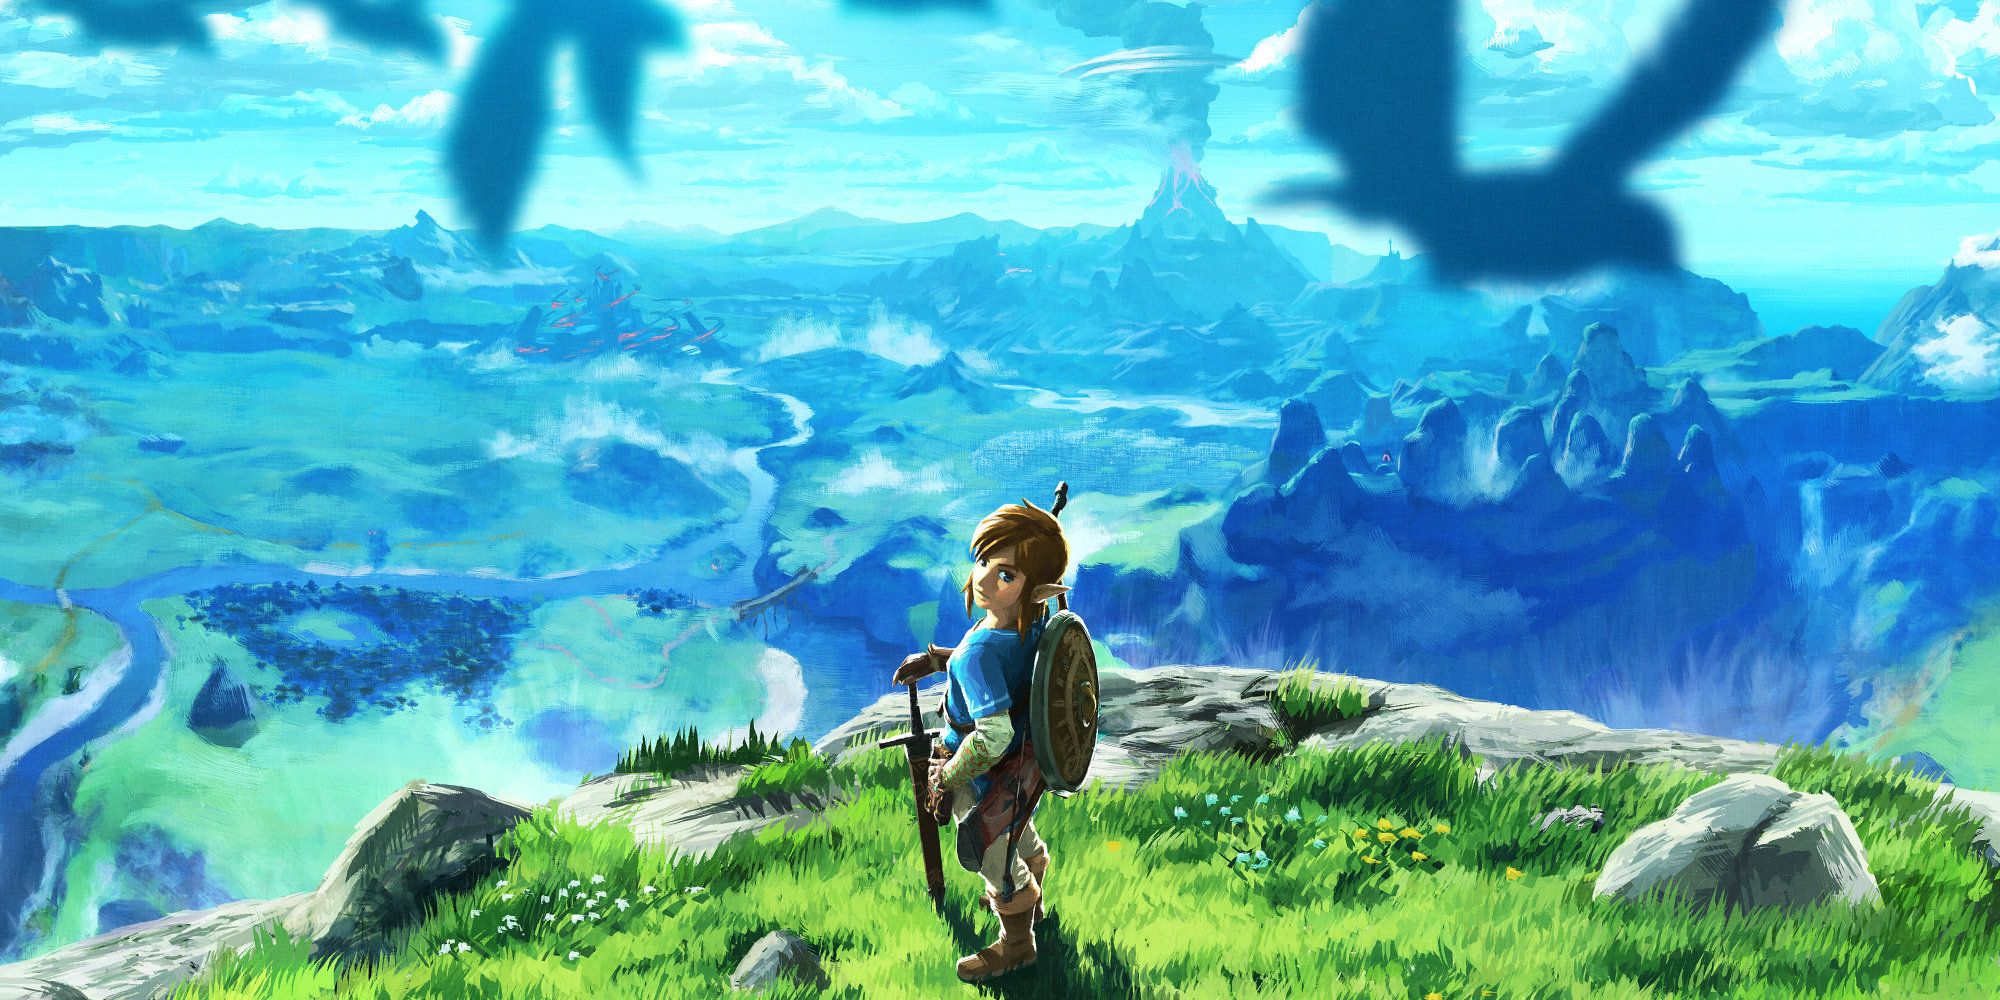 Legend of Zelda Breath of the Wild artwork